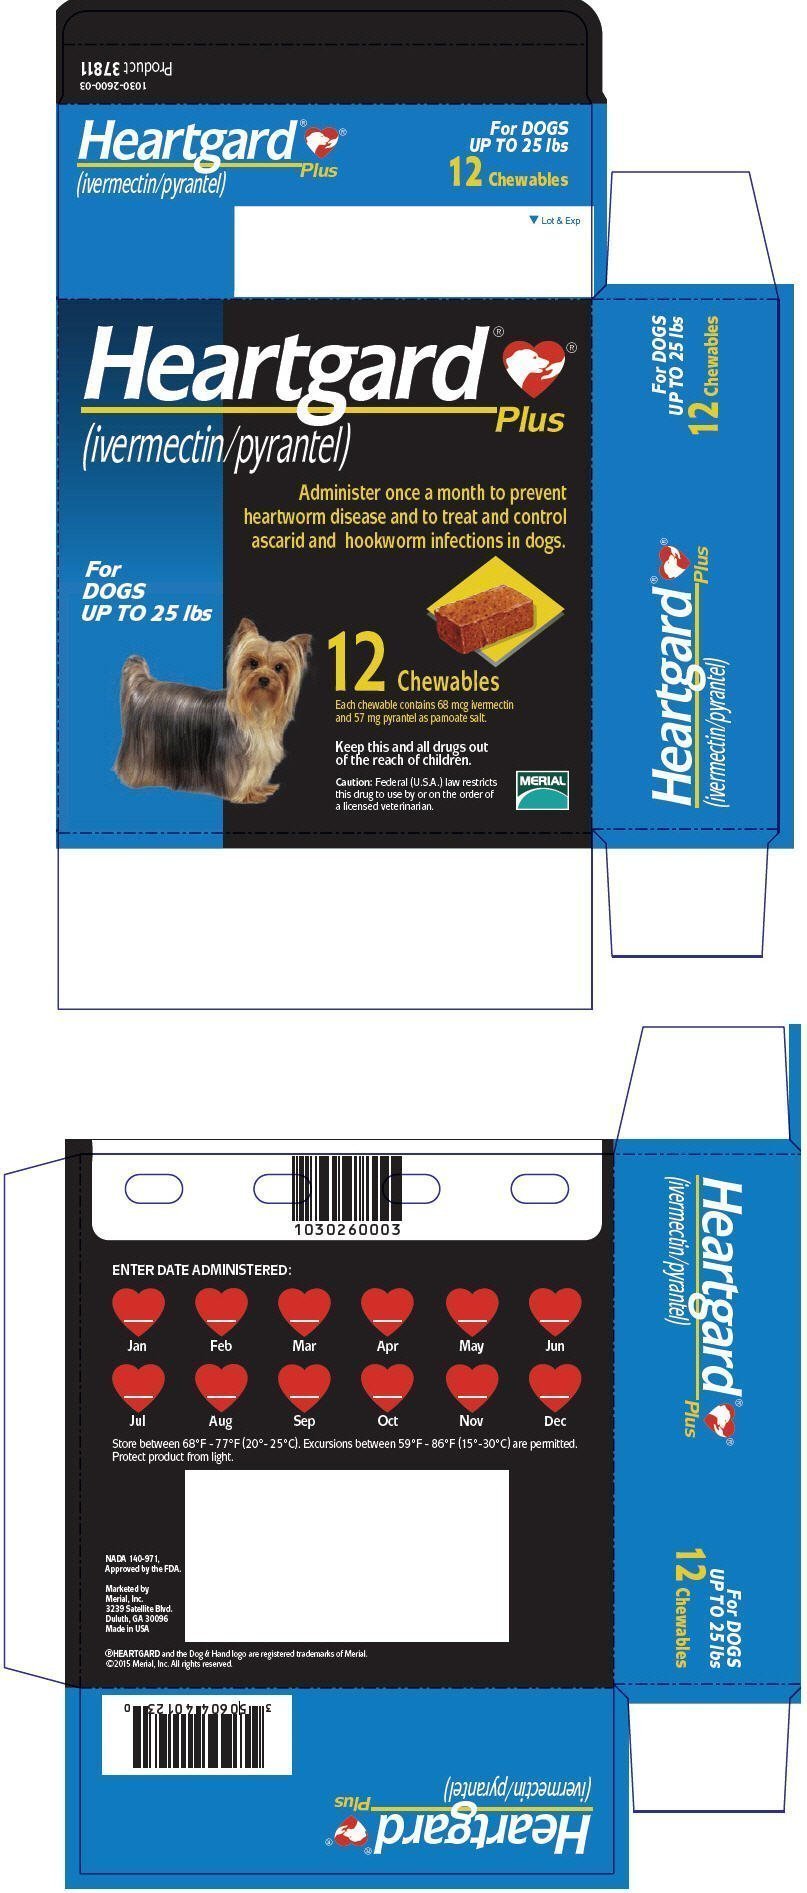 PRINCIPAL DISPLAY PANEL - 12 Tablet Carton (For Dogs Up To 25 lbs)